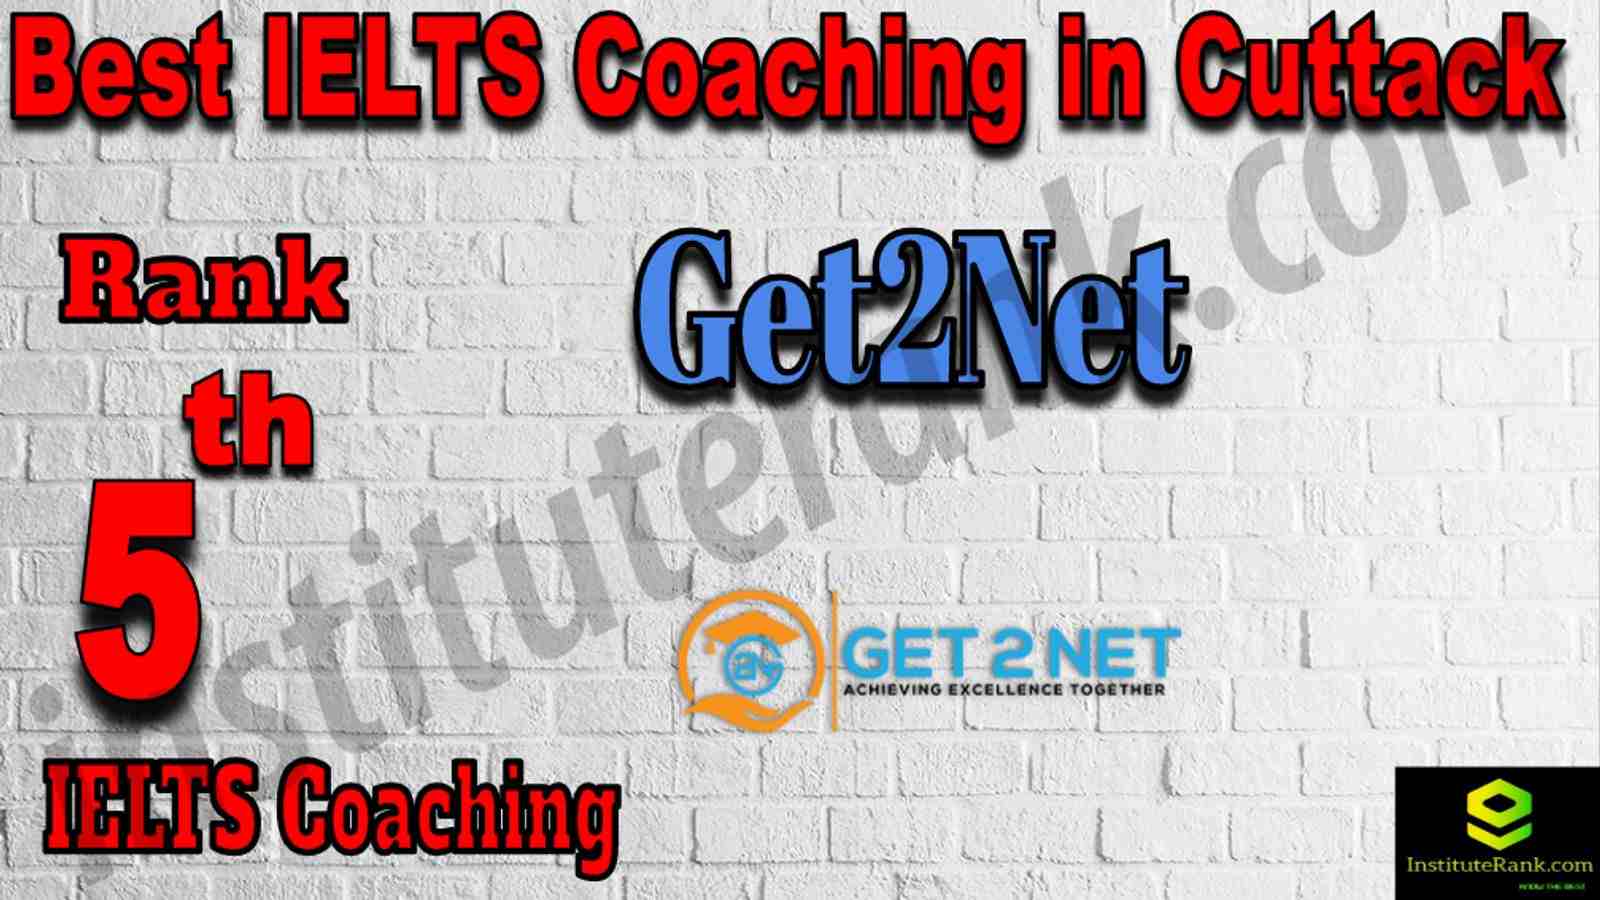 5th Best IELTS Coaching in Cuttack